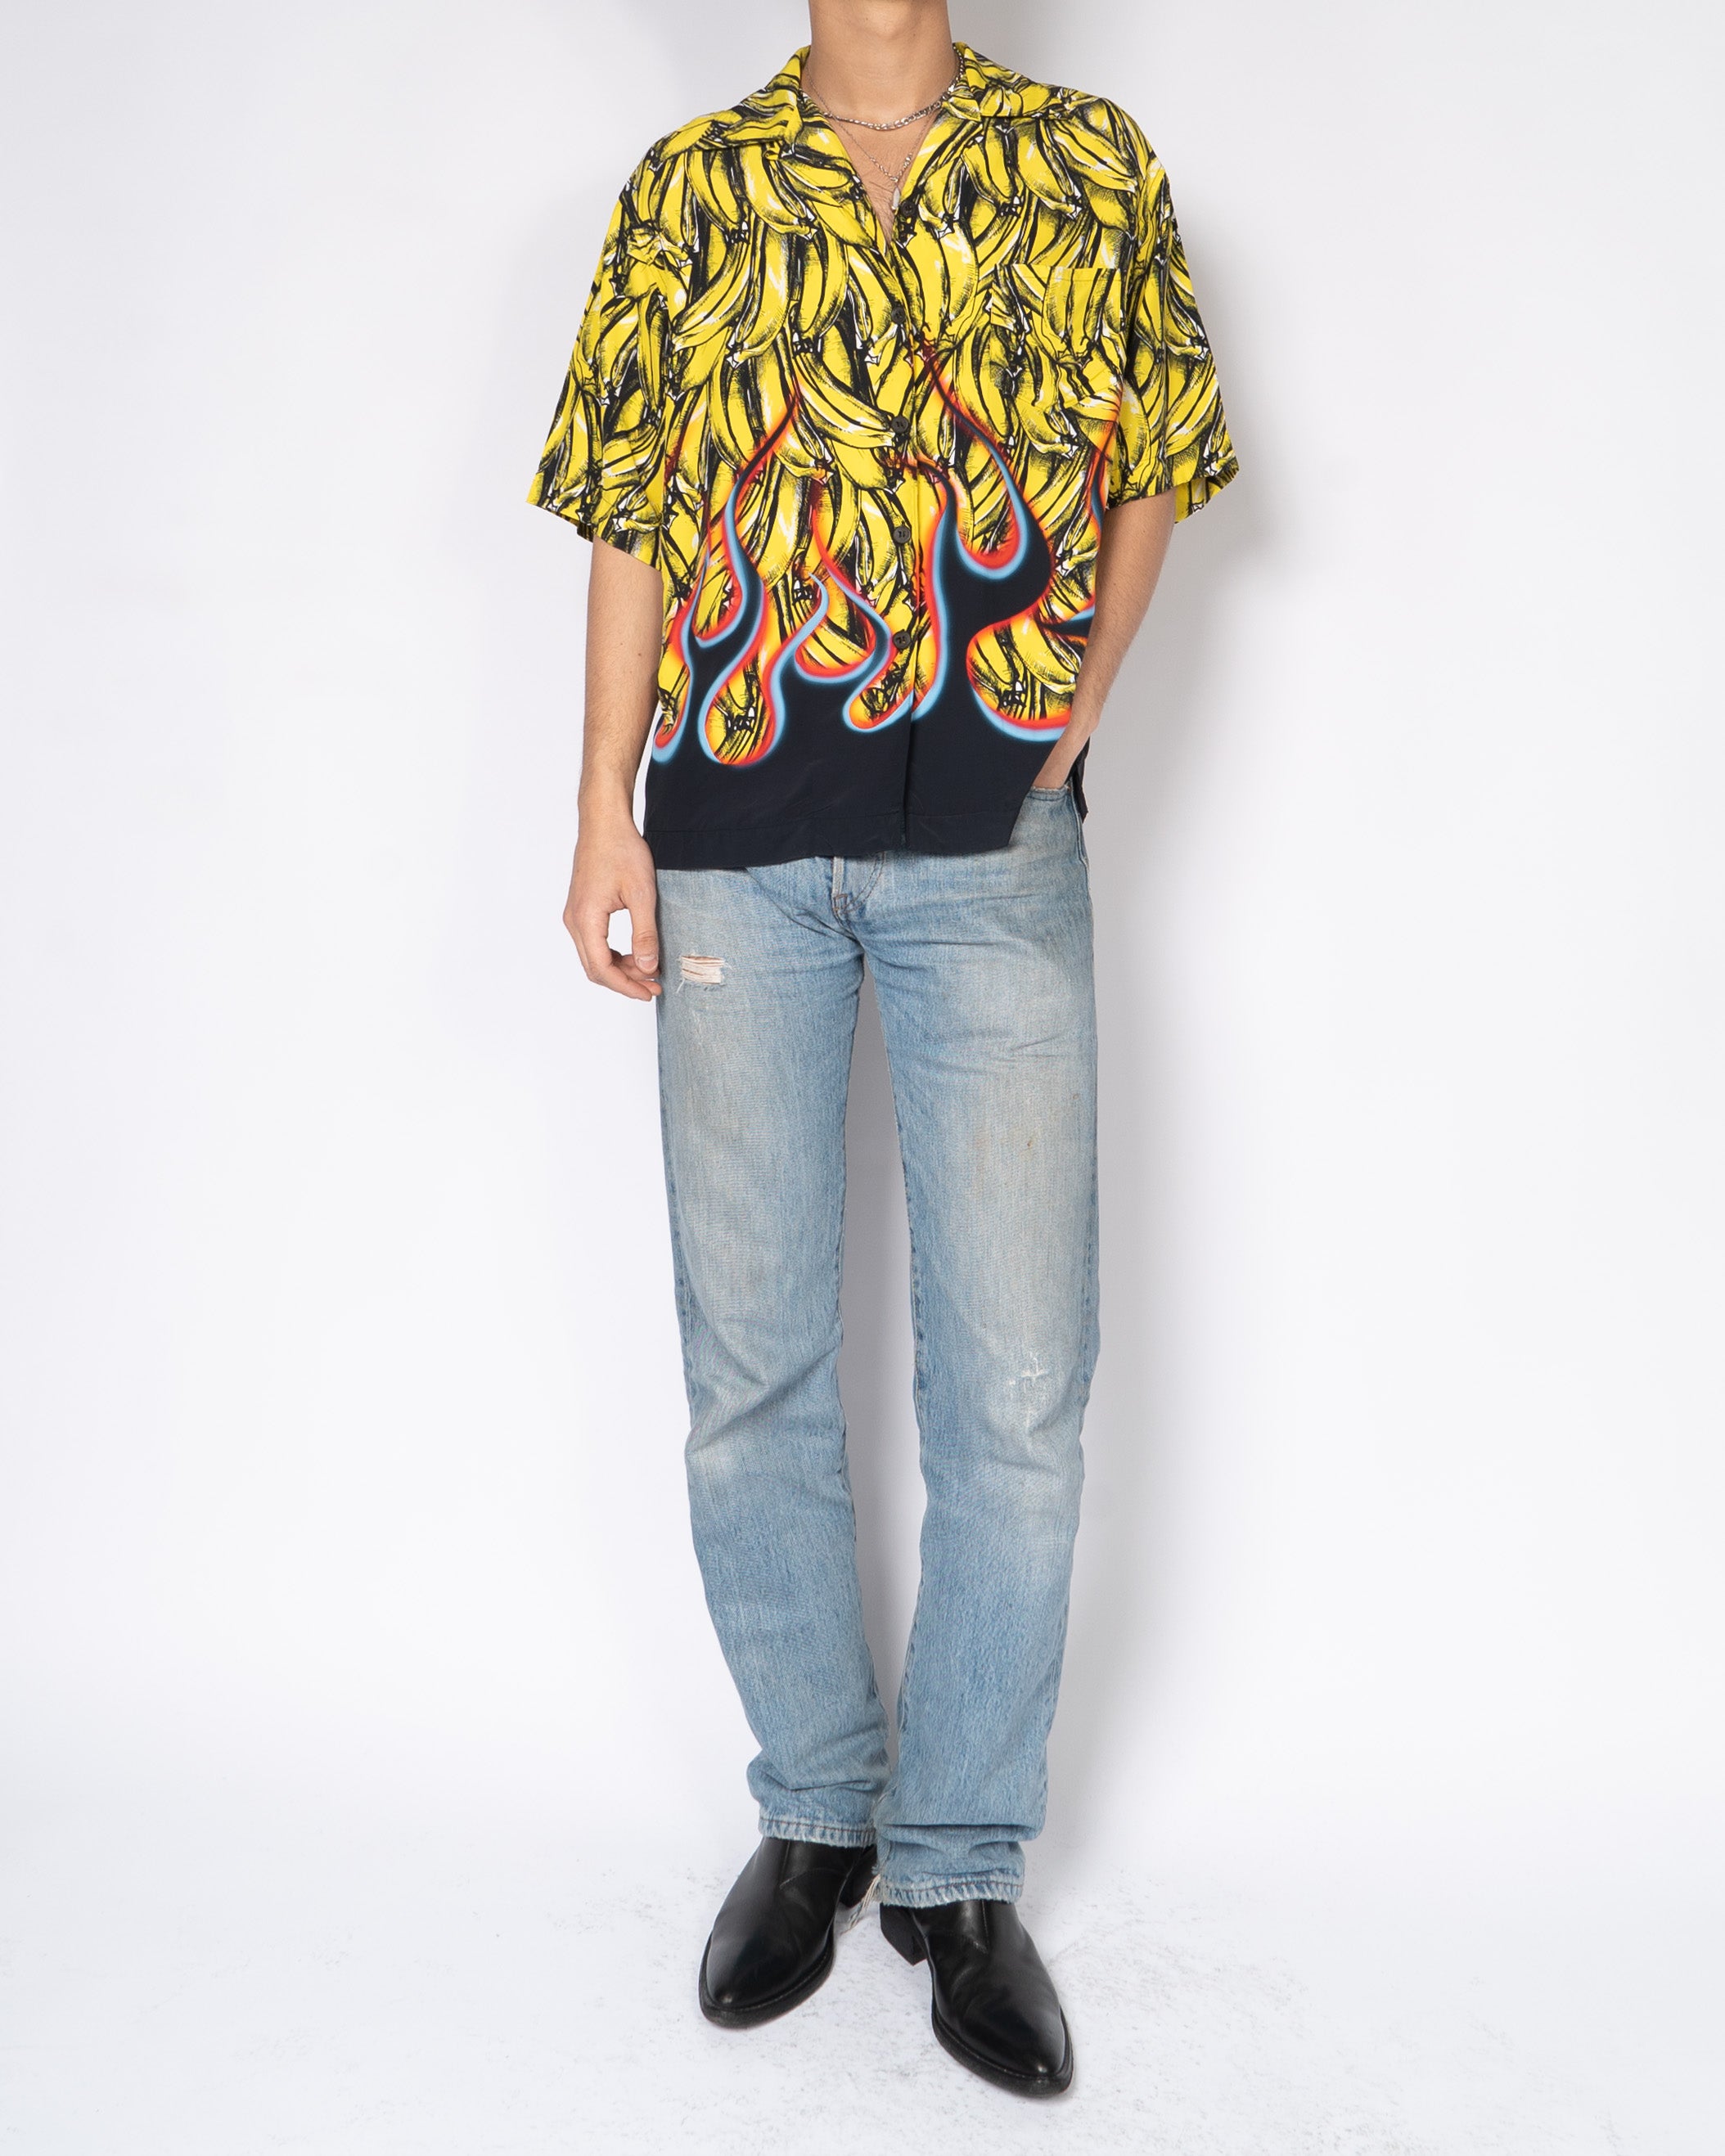 FW18 Archive Print Banana & Flames Viscose Shirt